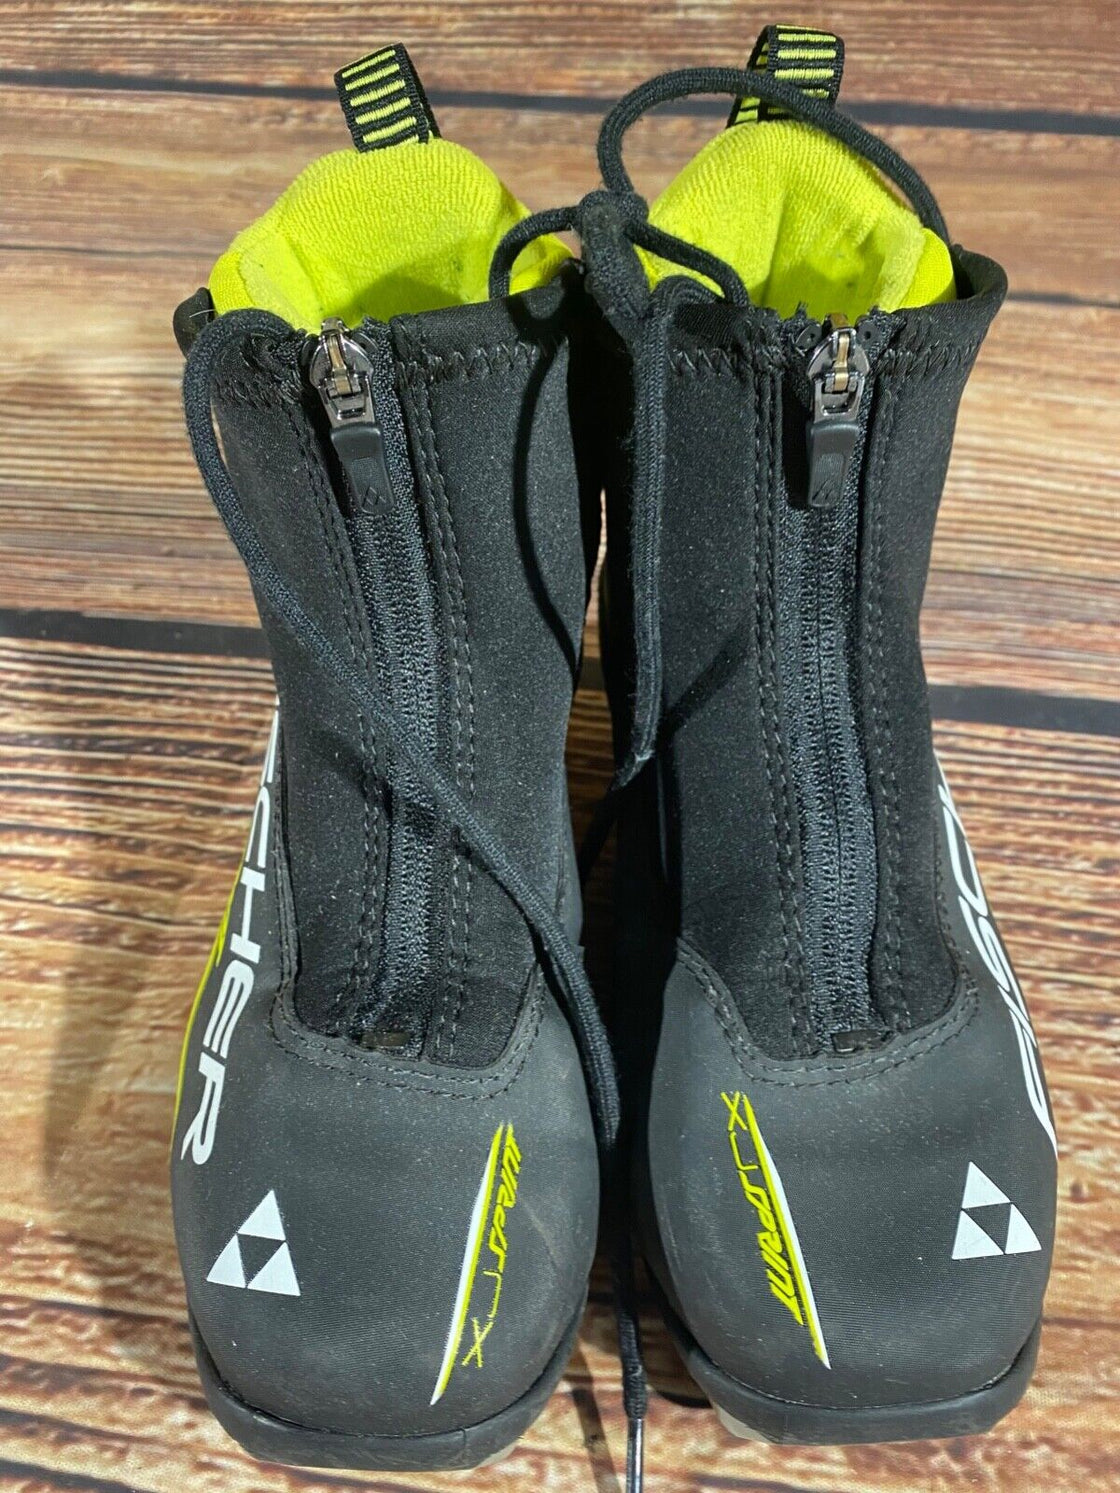 Fischer XJ Sprint Kids Cross Country Ski Boots Size EU35 US3.5 NNN F-480